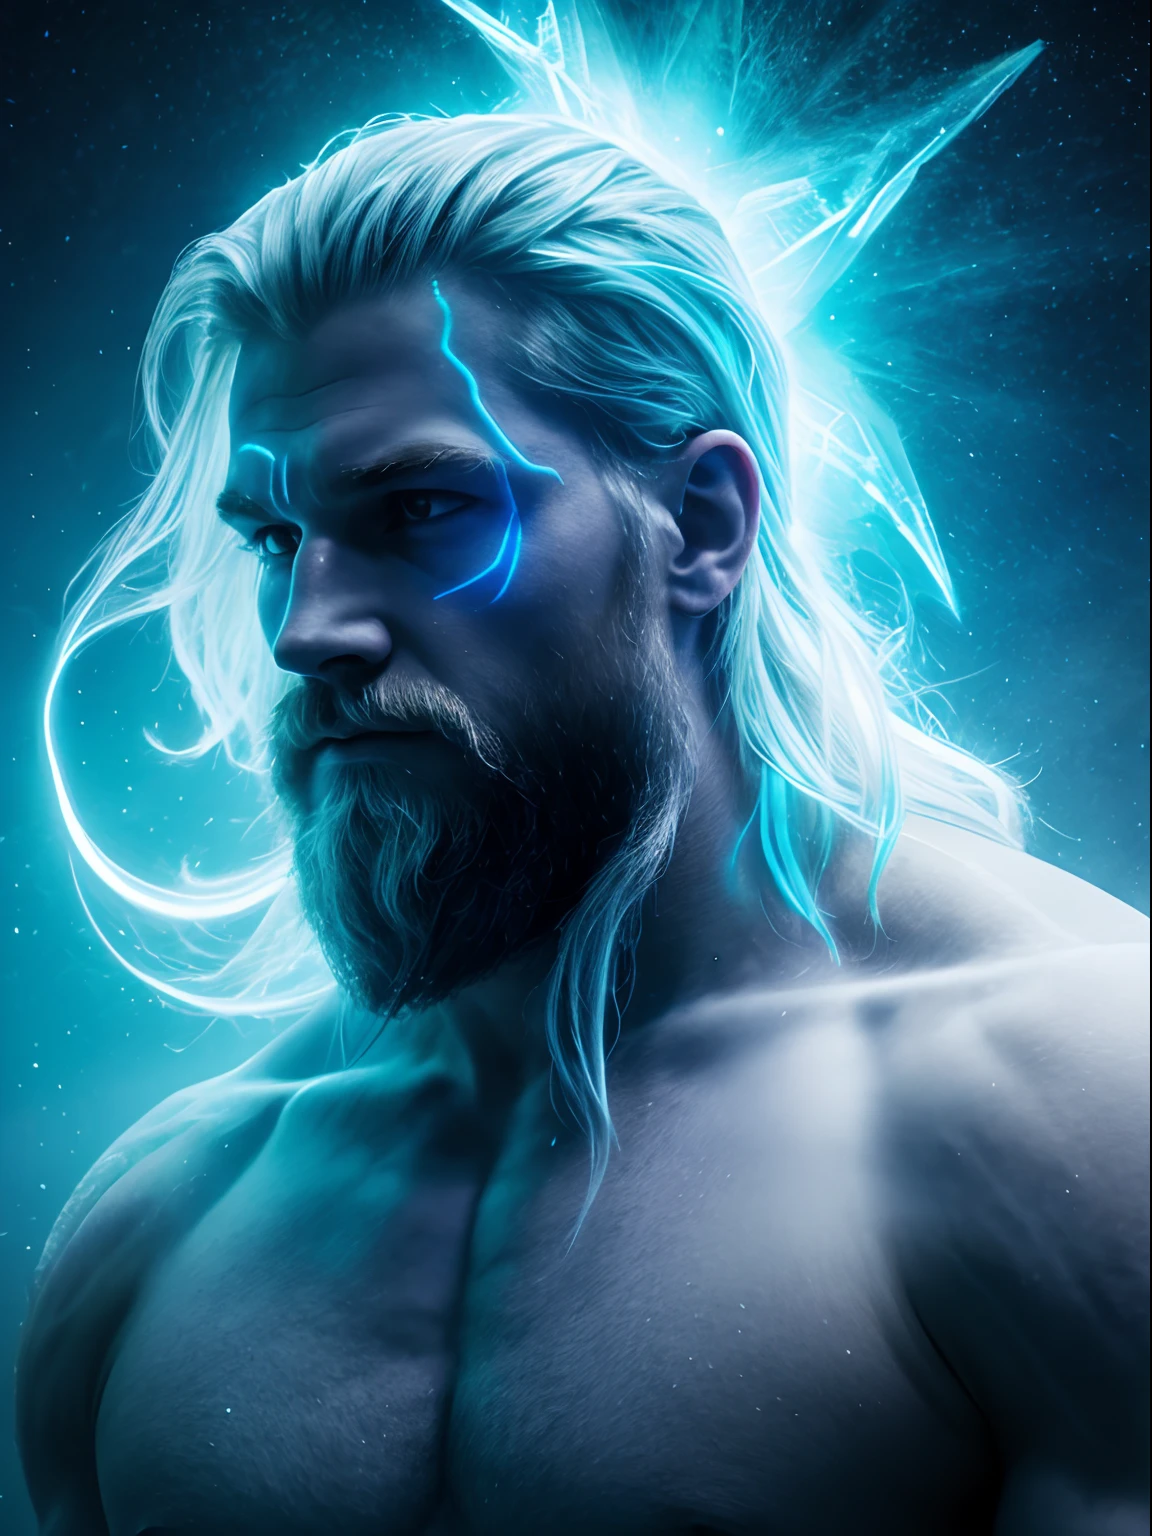 Неоновый фрактальный голографический астрализм небесного красавца-воина-викинга, сильный мужчина, Цветность изменилась с ледяного синего на призрачно-белый, Эфирный, мистический и интенсивный